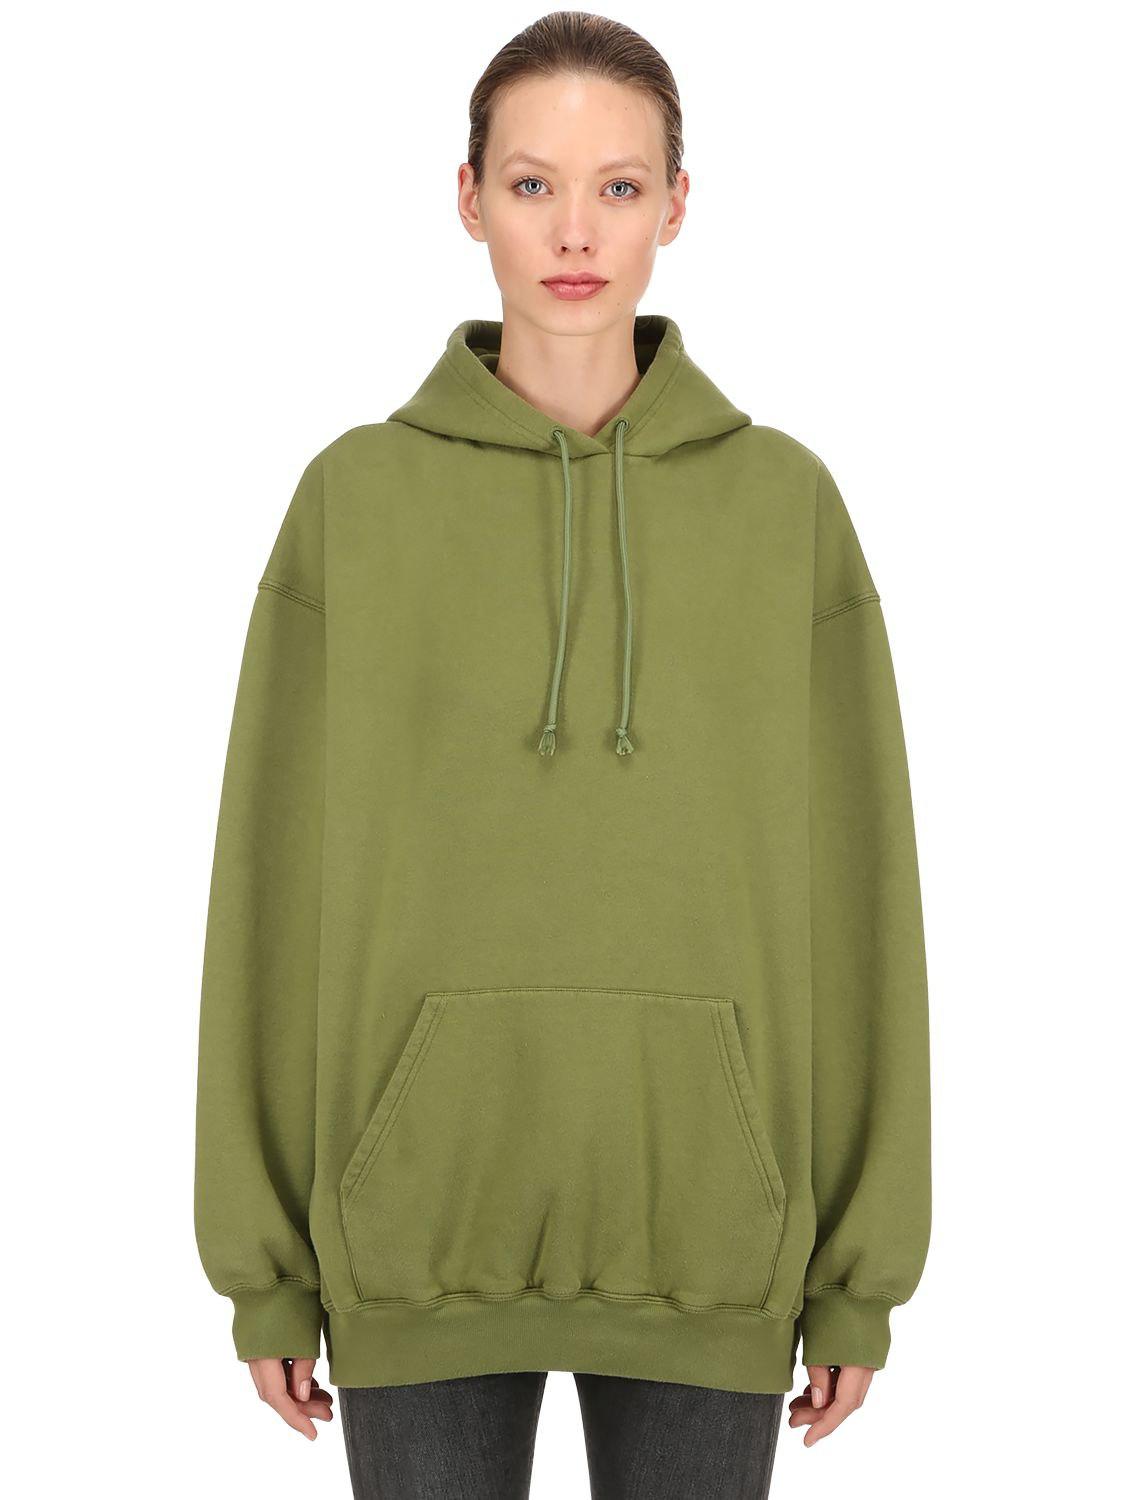 balenciaga sweatshirt womens olive